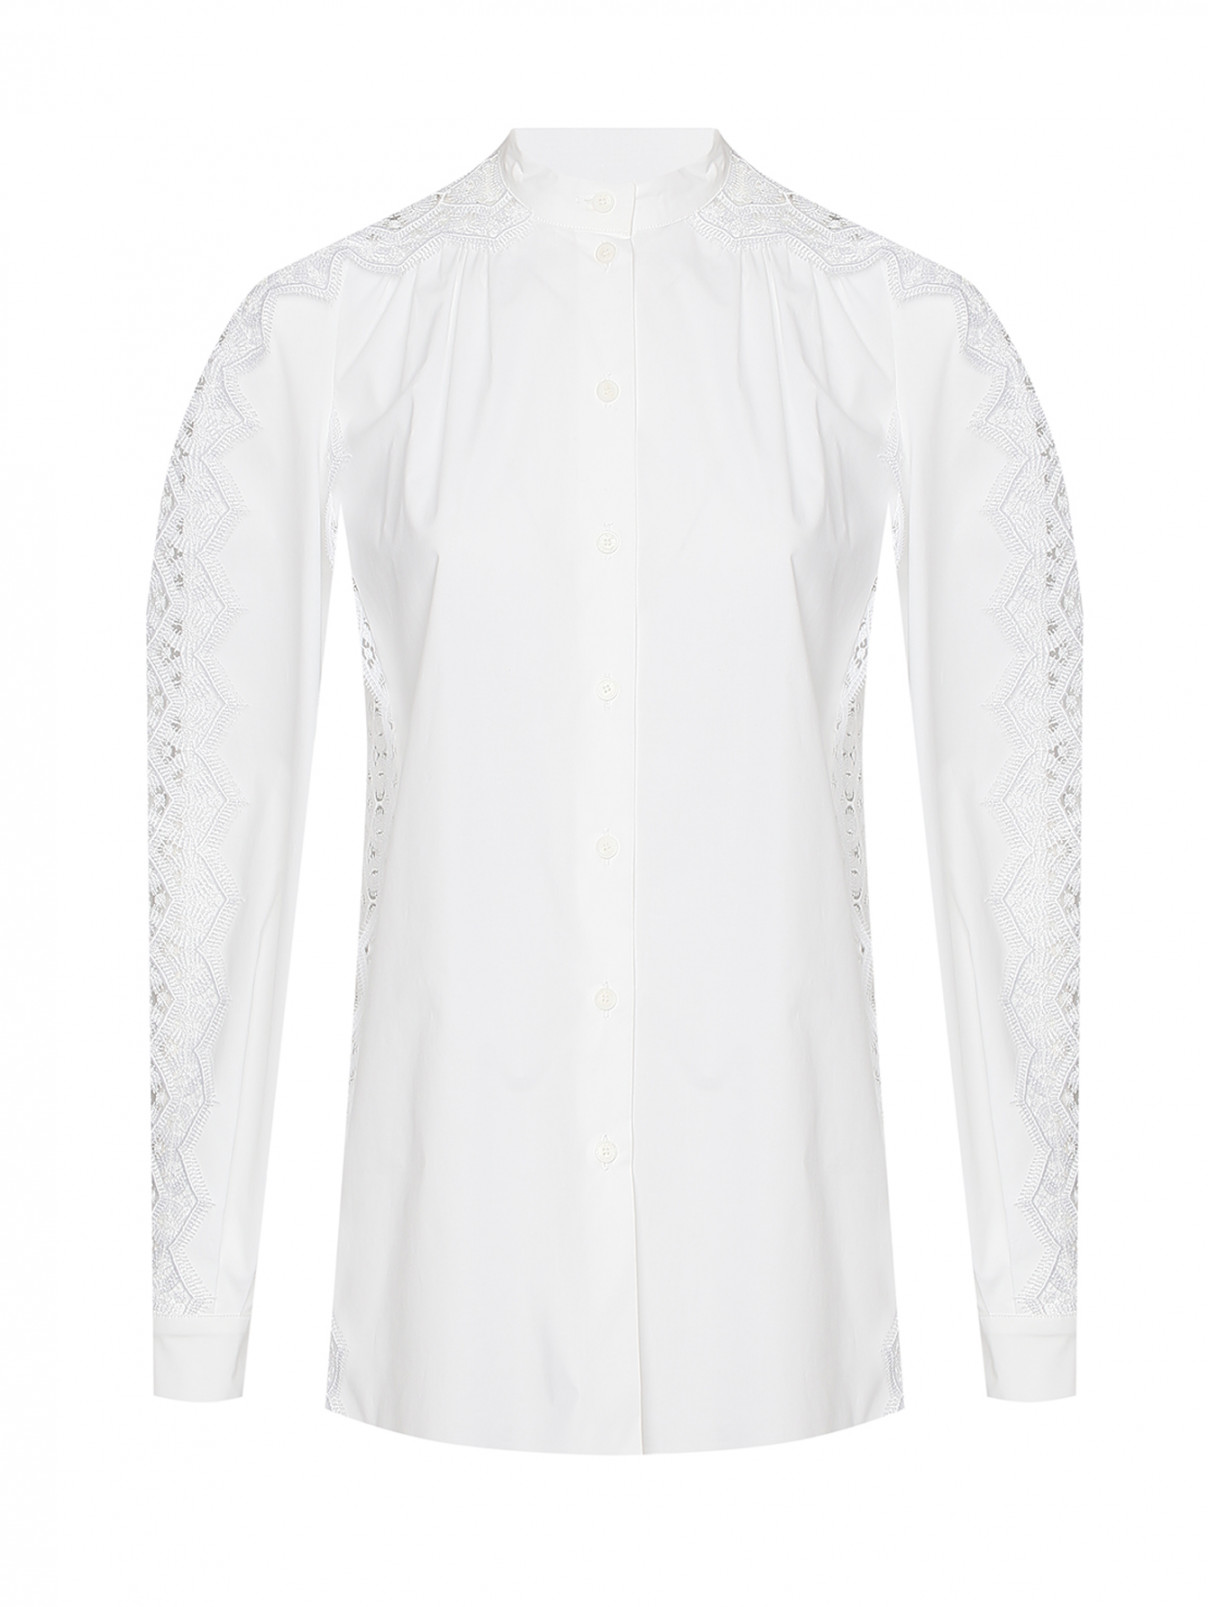 Блуза из хлопка декорированная кружевом Alberta Ferretti  –  Общий вид  – Цвет:  Бежевый